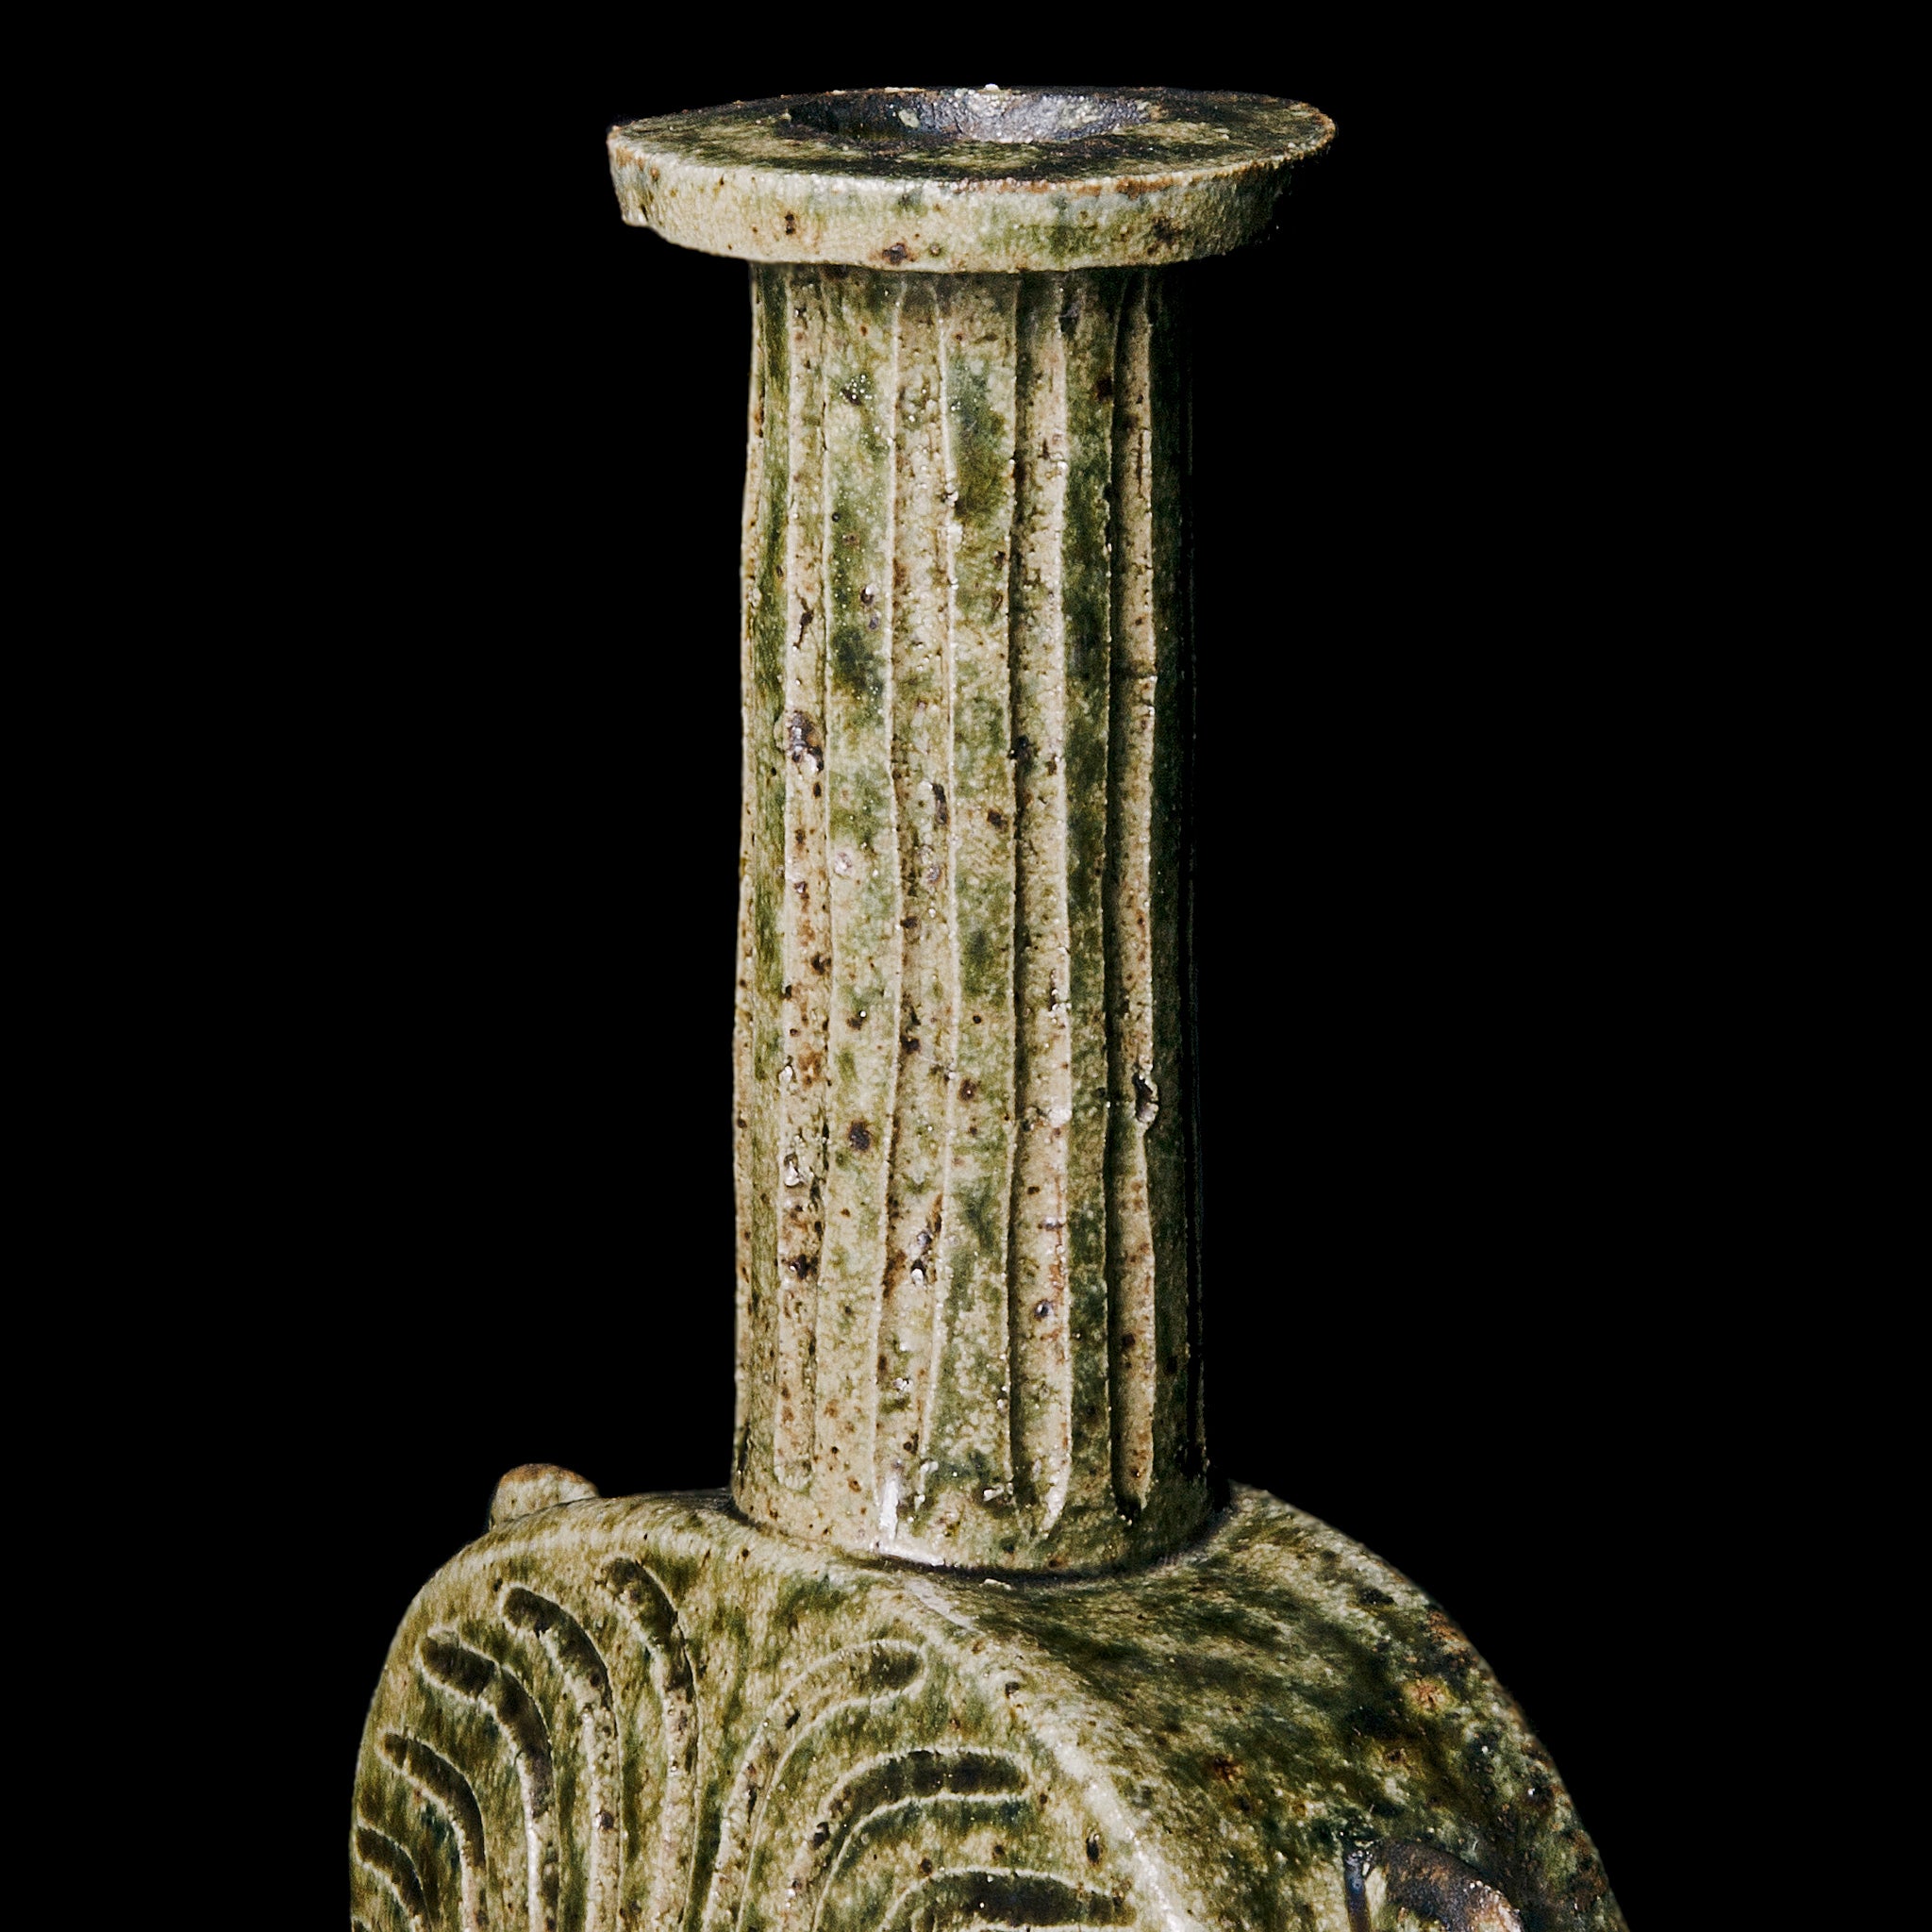 Vase No.144/22